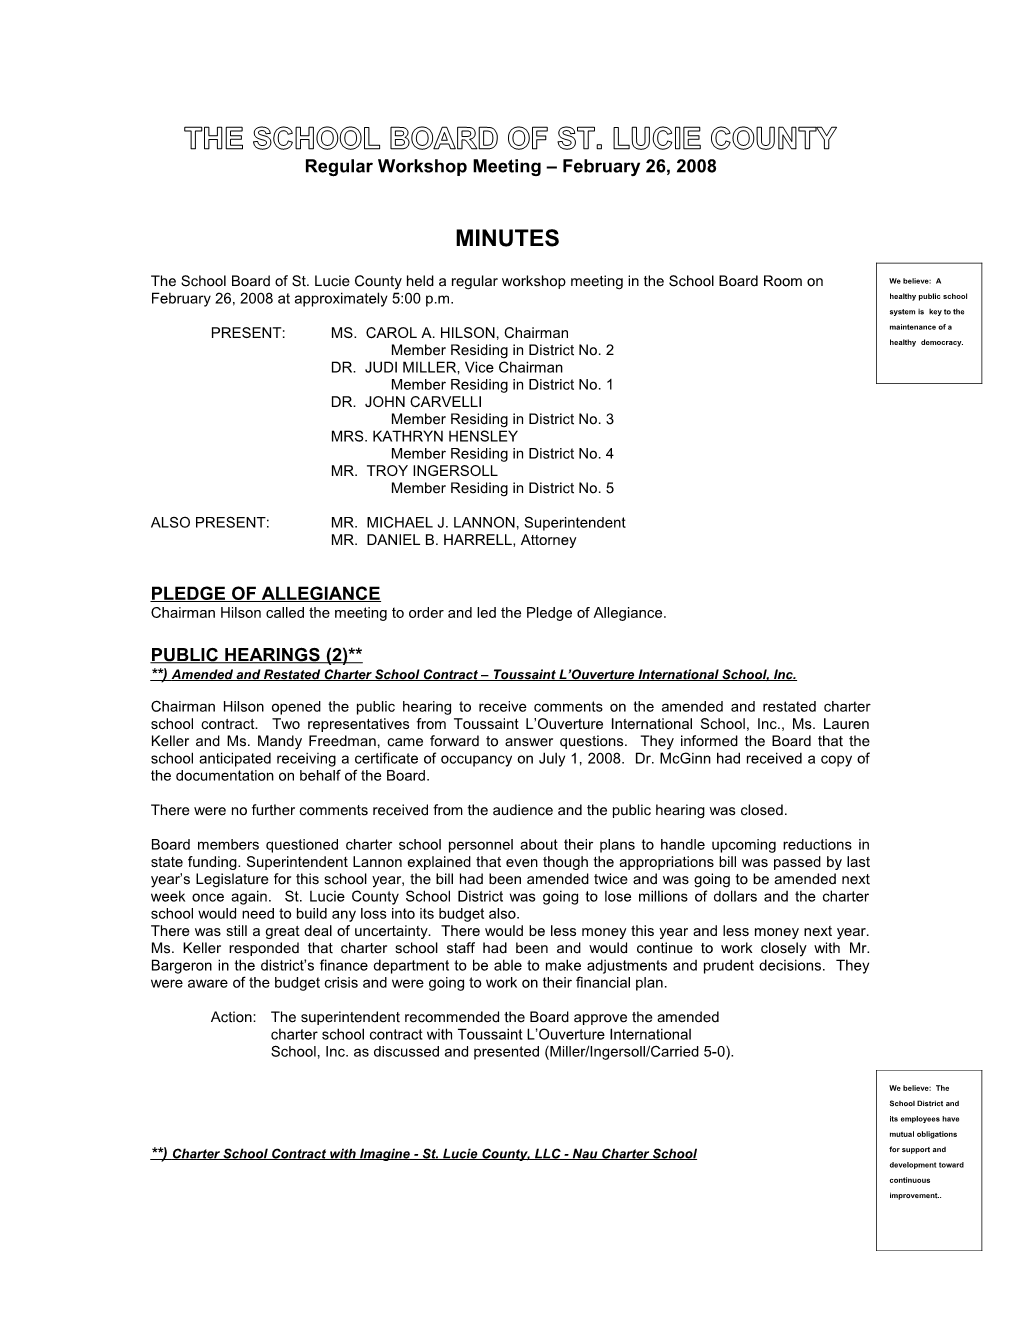 02-26-08 SLCSB Regular Workshop Meeting Minutes